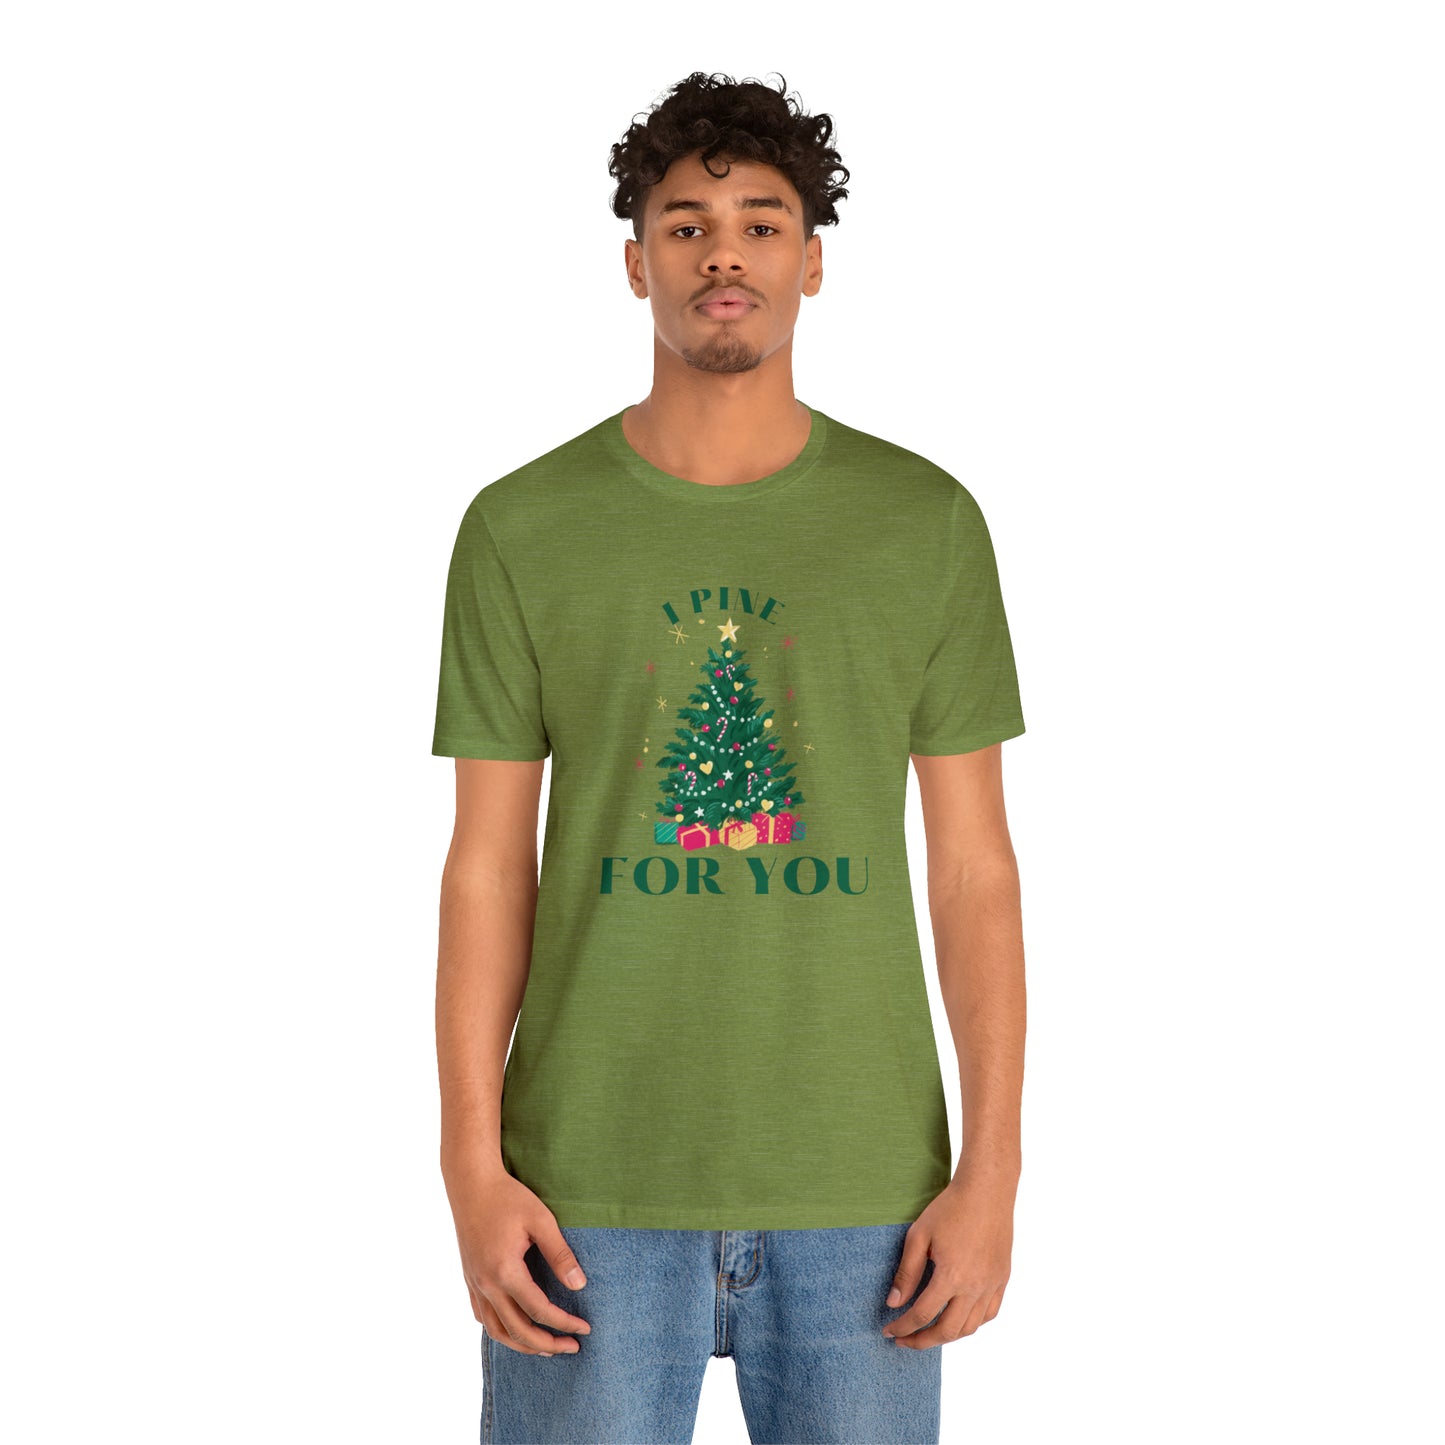 I Pine for You Christmas Dad Joke T-Shirt